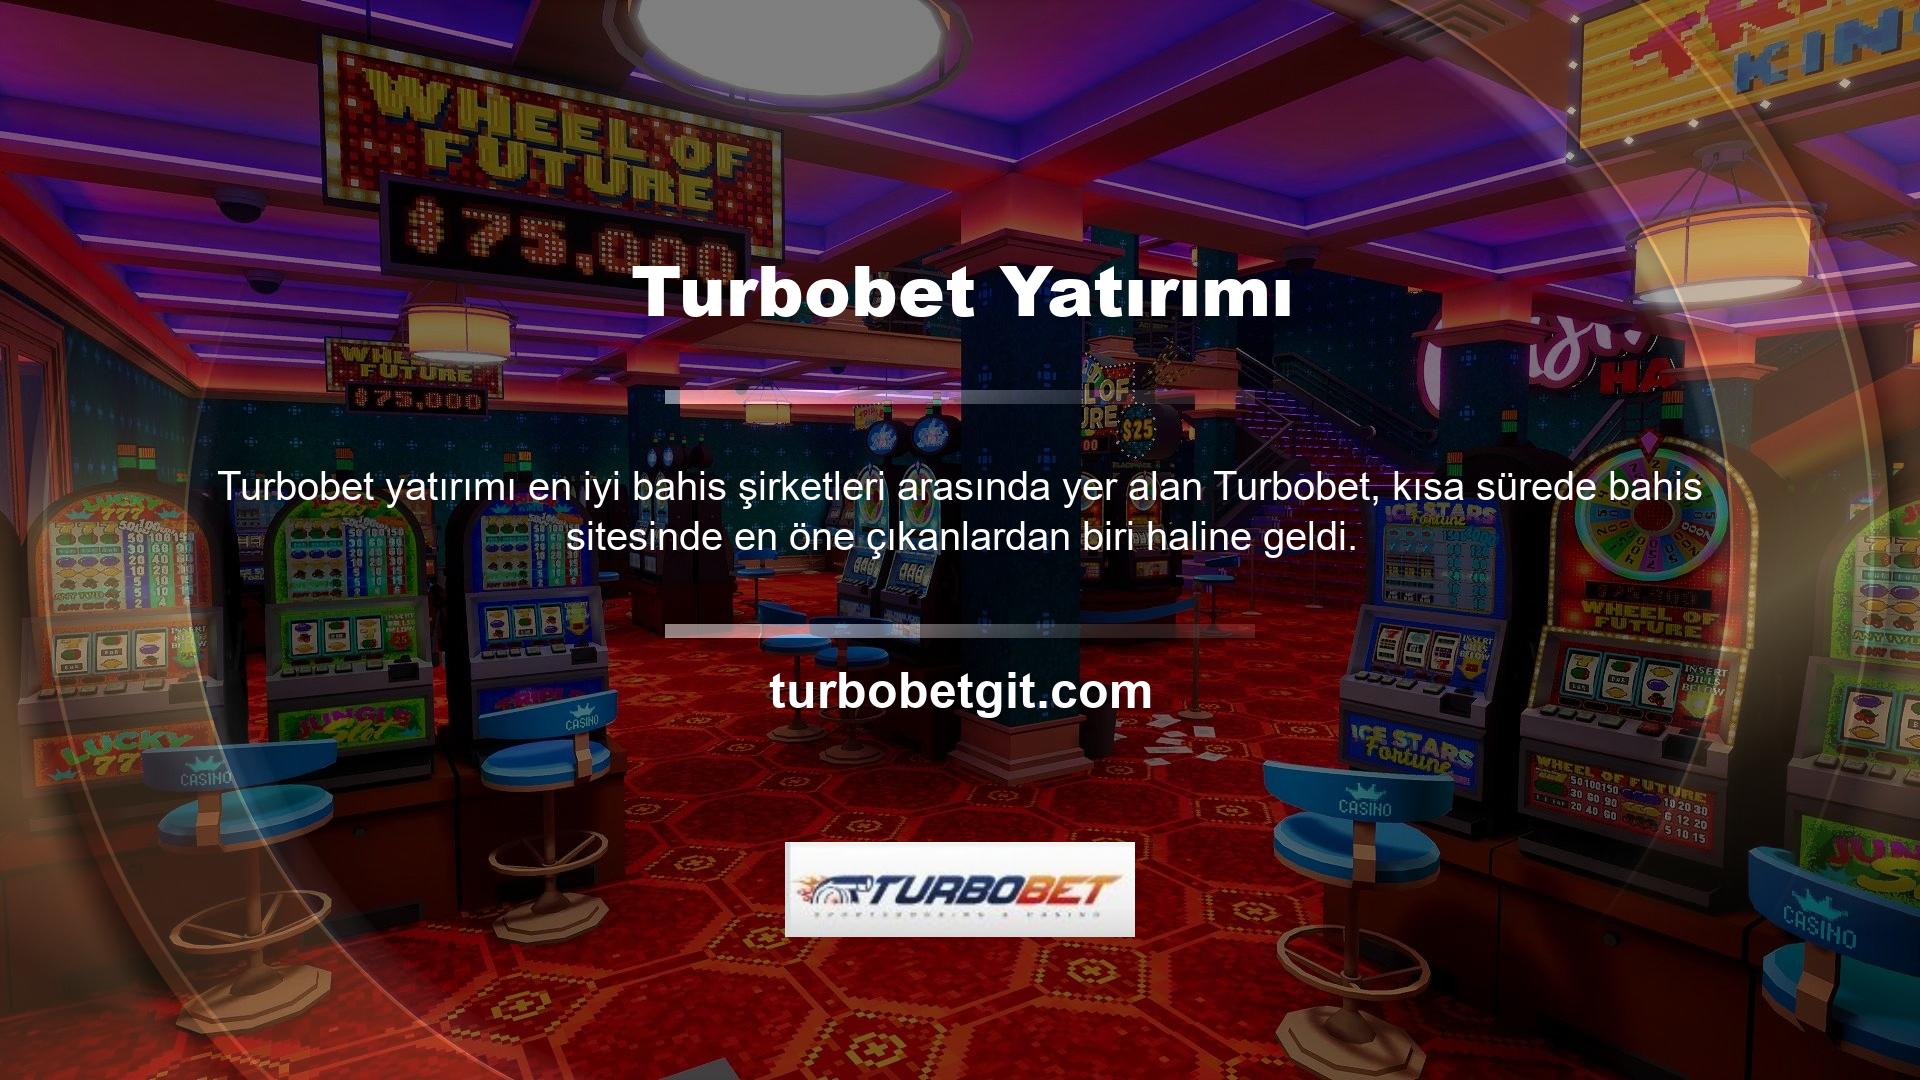 Site, oyun bölümleri ve promosyonlarıyla Türk oyun tutkunlarına hitap etmektedir